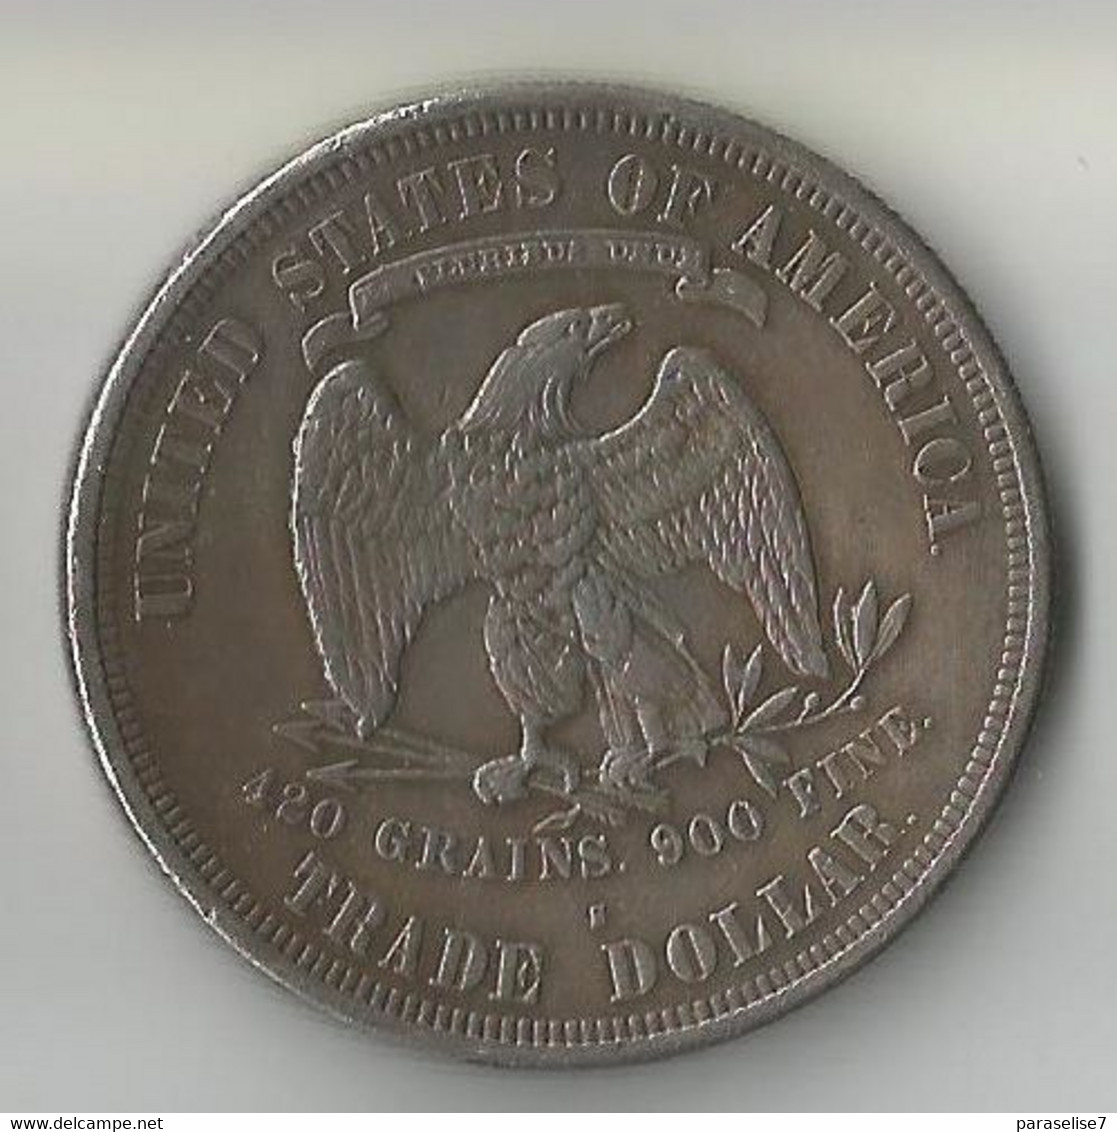 USA 1 TRADE DOLLAR 1876 ARGENT - 1873-1885: Trade Dollars